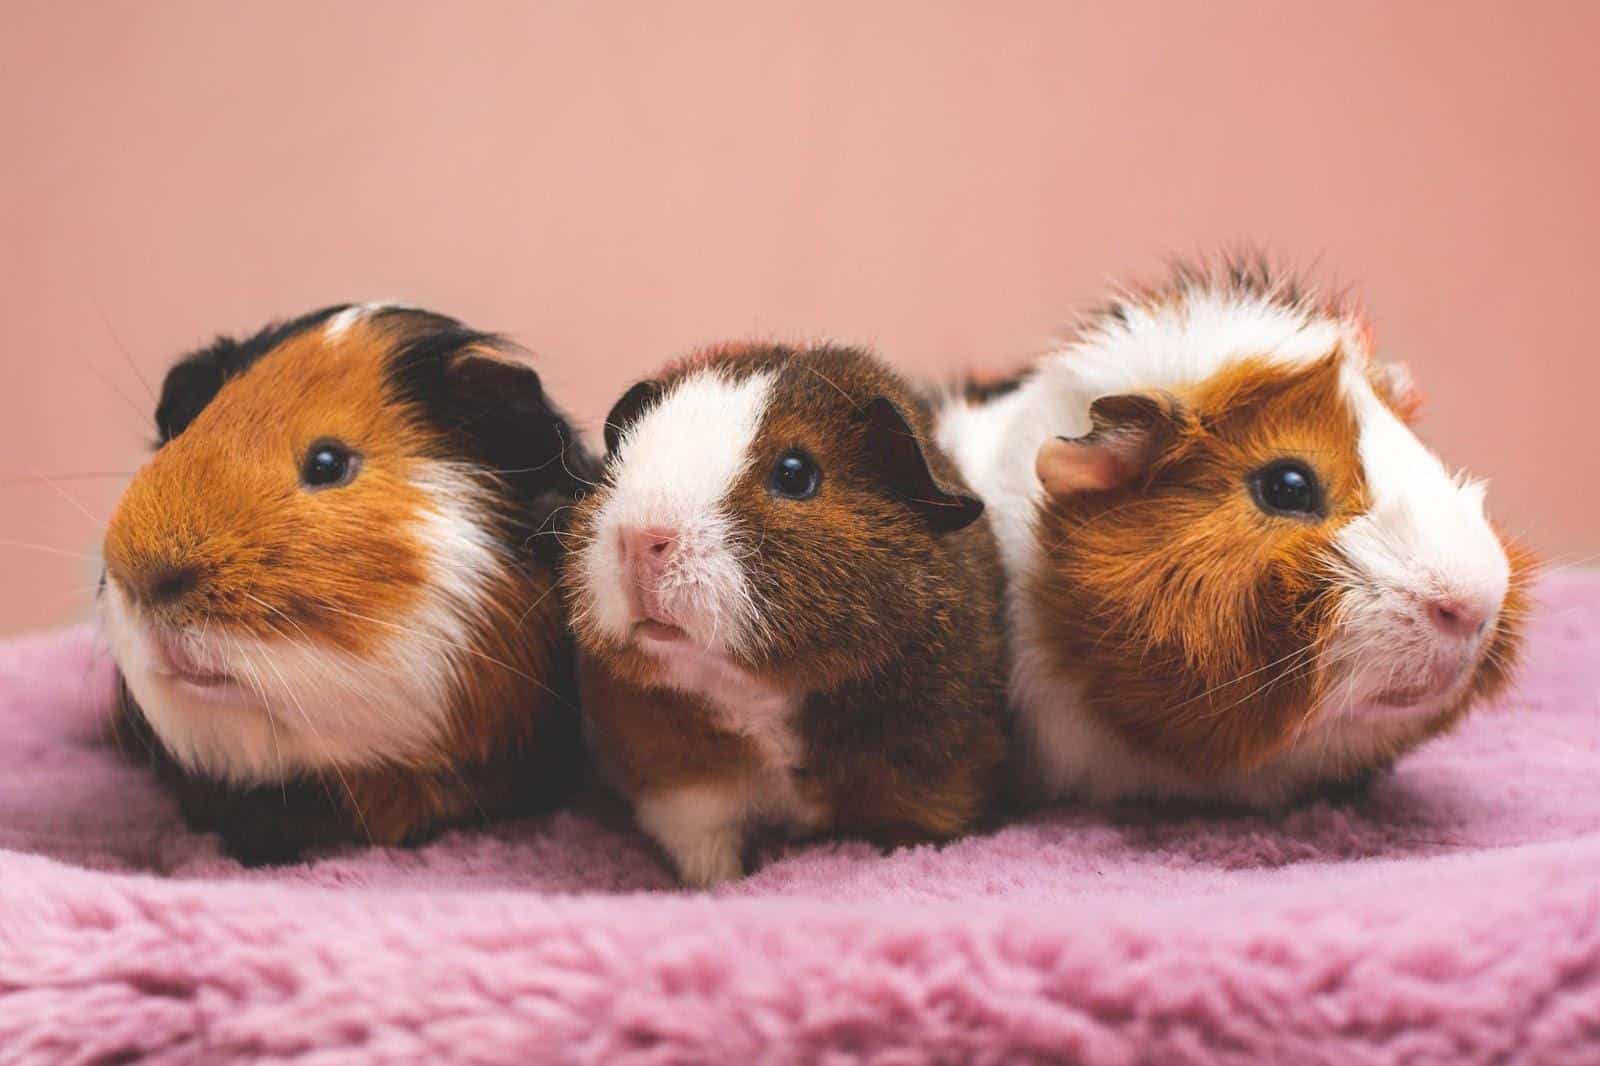 Obesity in hamsters